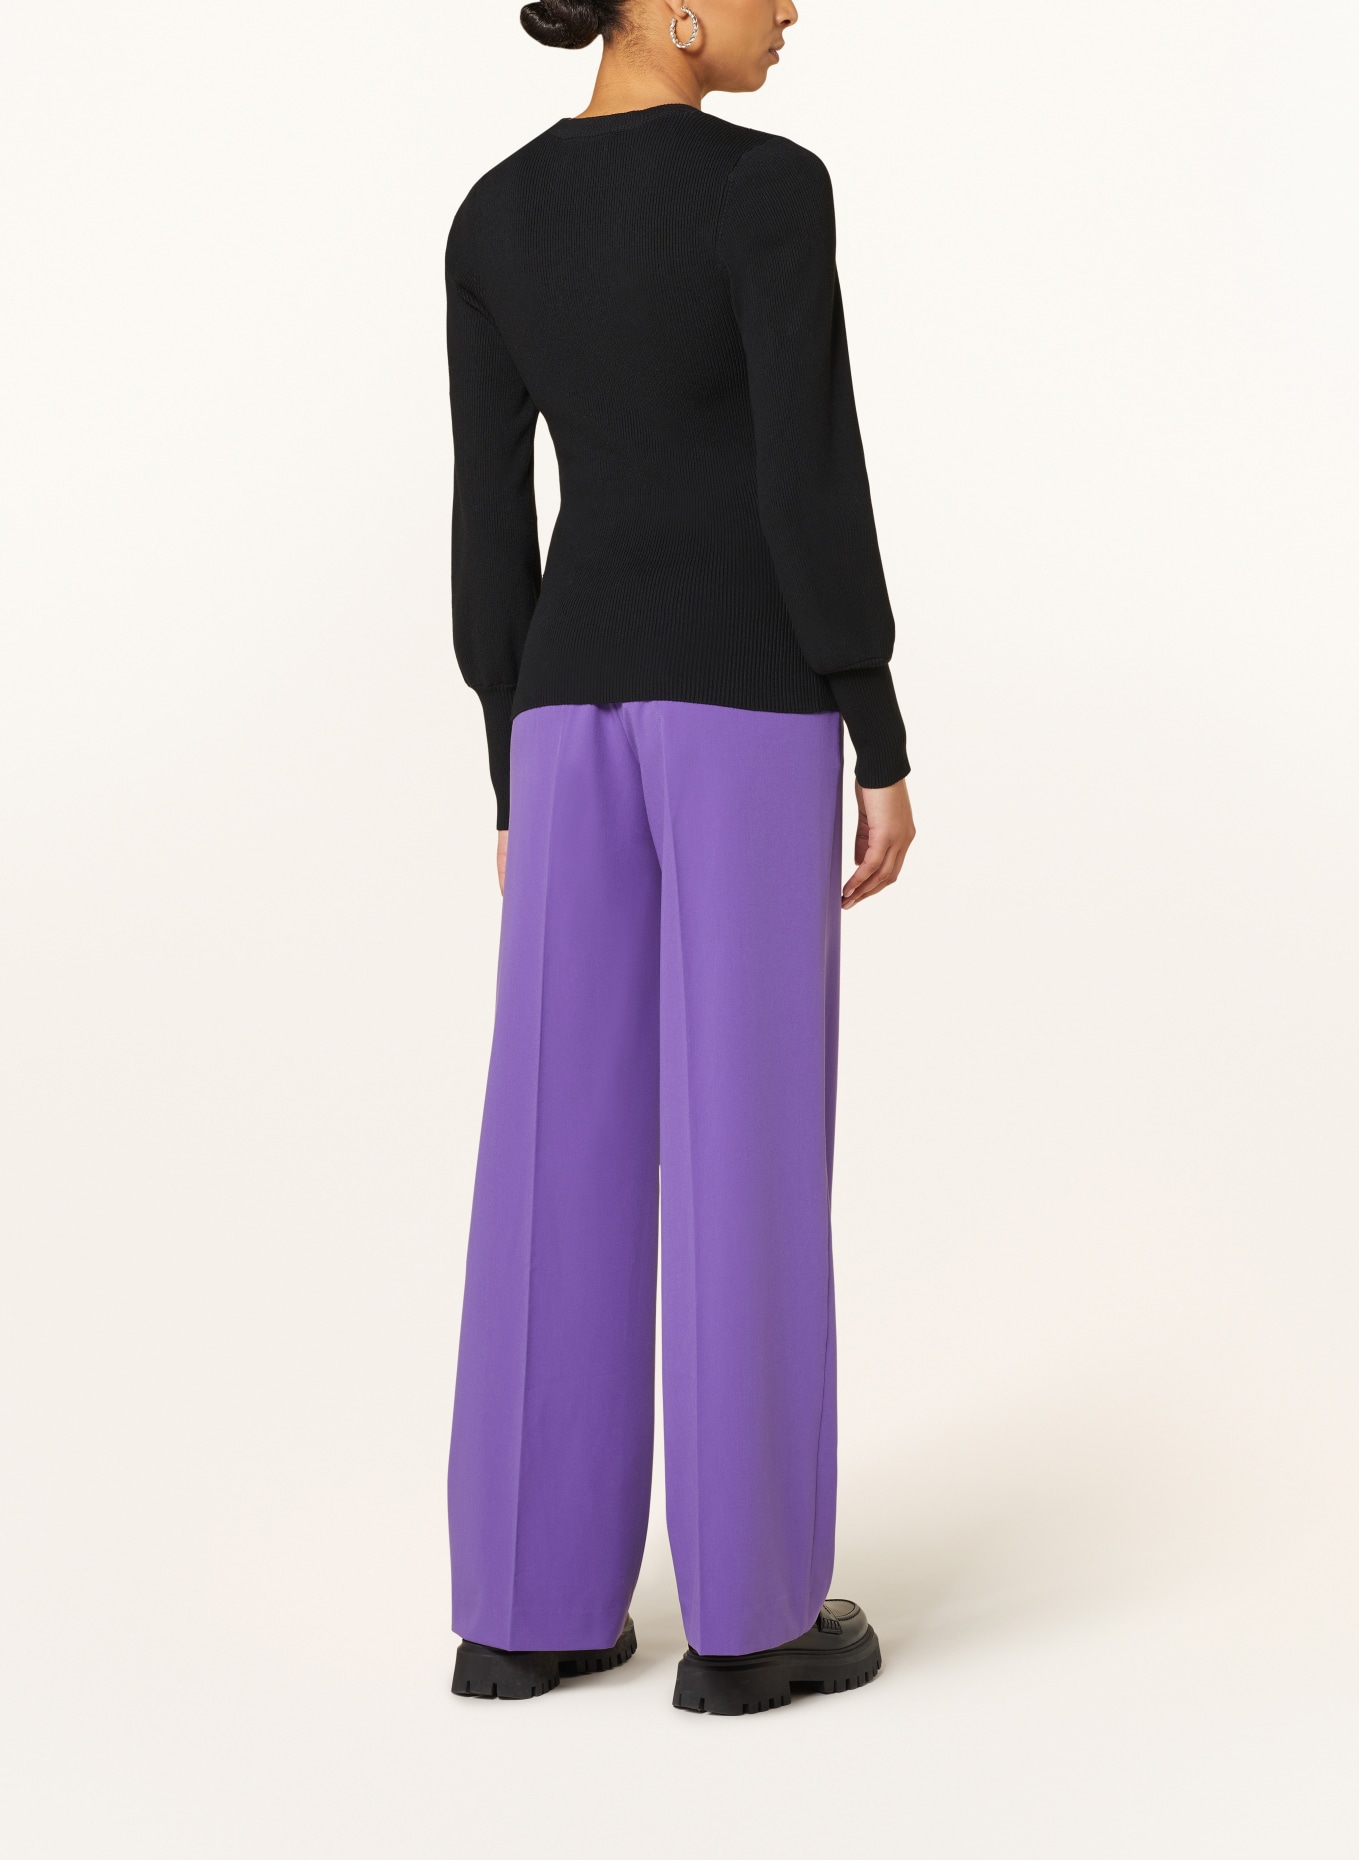 FABIENNE CHAPOT Sweater LILLIAN, Color: BLACK (Image 3)